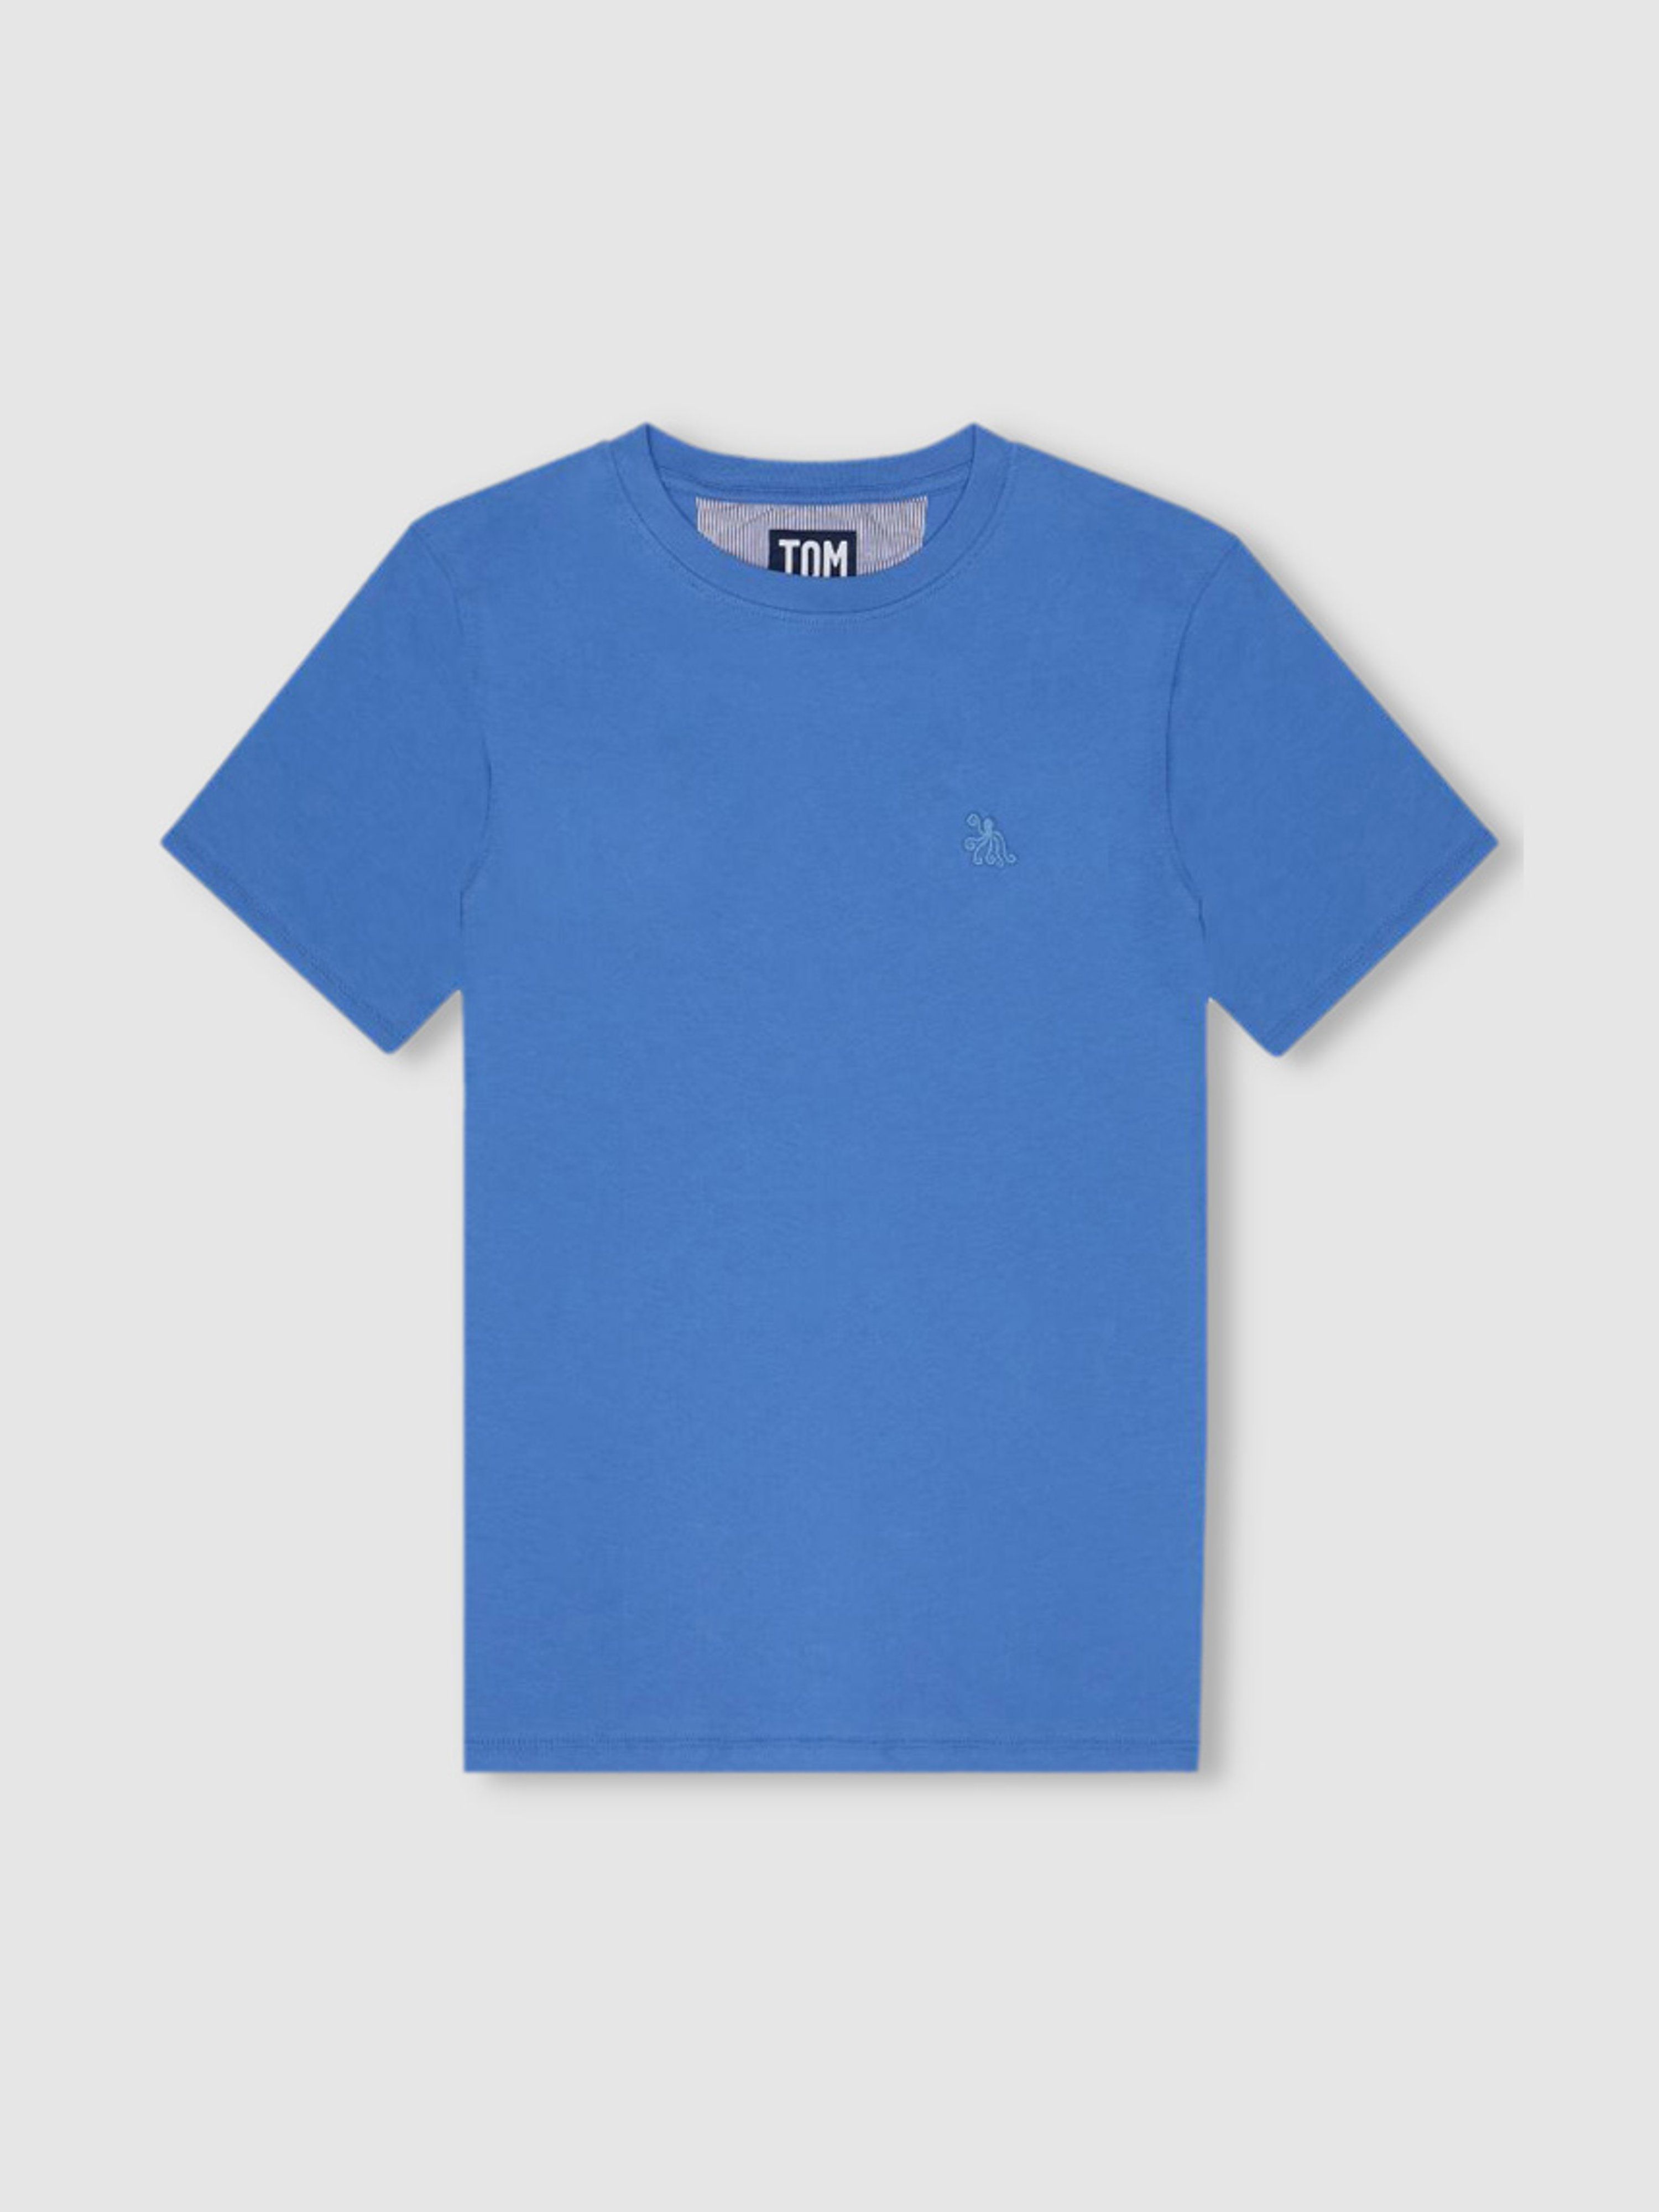 Atlantic Blue T-Shirt - XXL - Also in: XL, L, S, M | Verishop